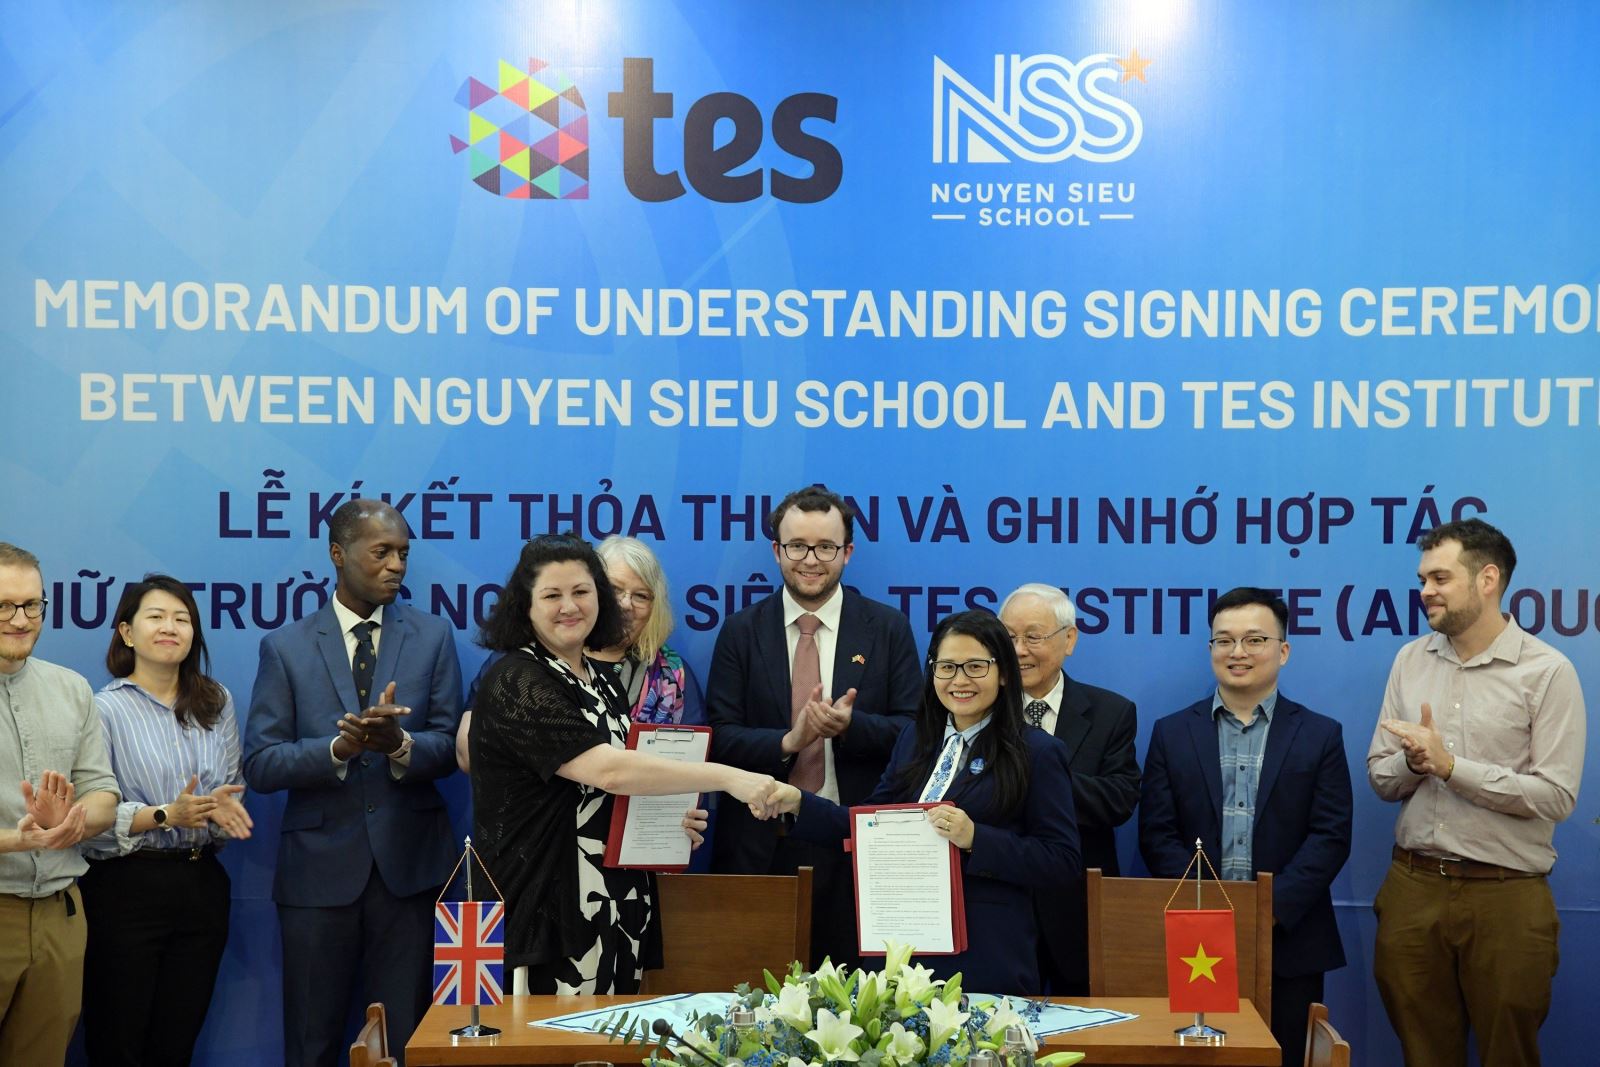 Hợp tác với TES, Nguyễn Siêu trở thành điểm thực hành nghiệp vụ sư phạm quốc tế